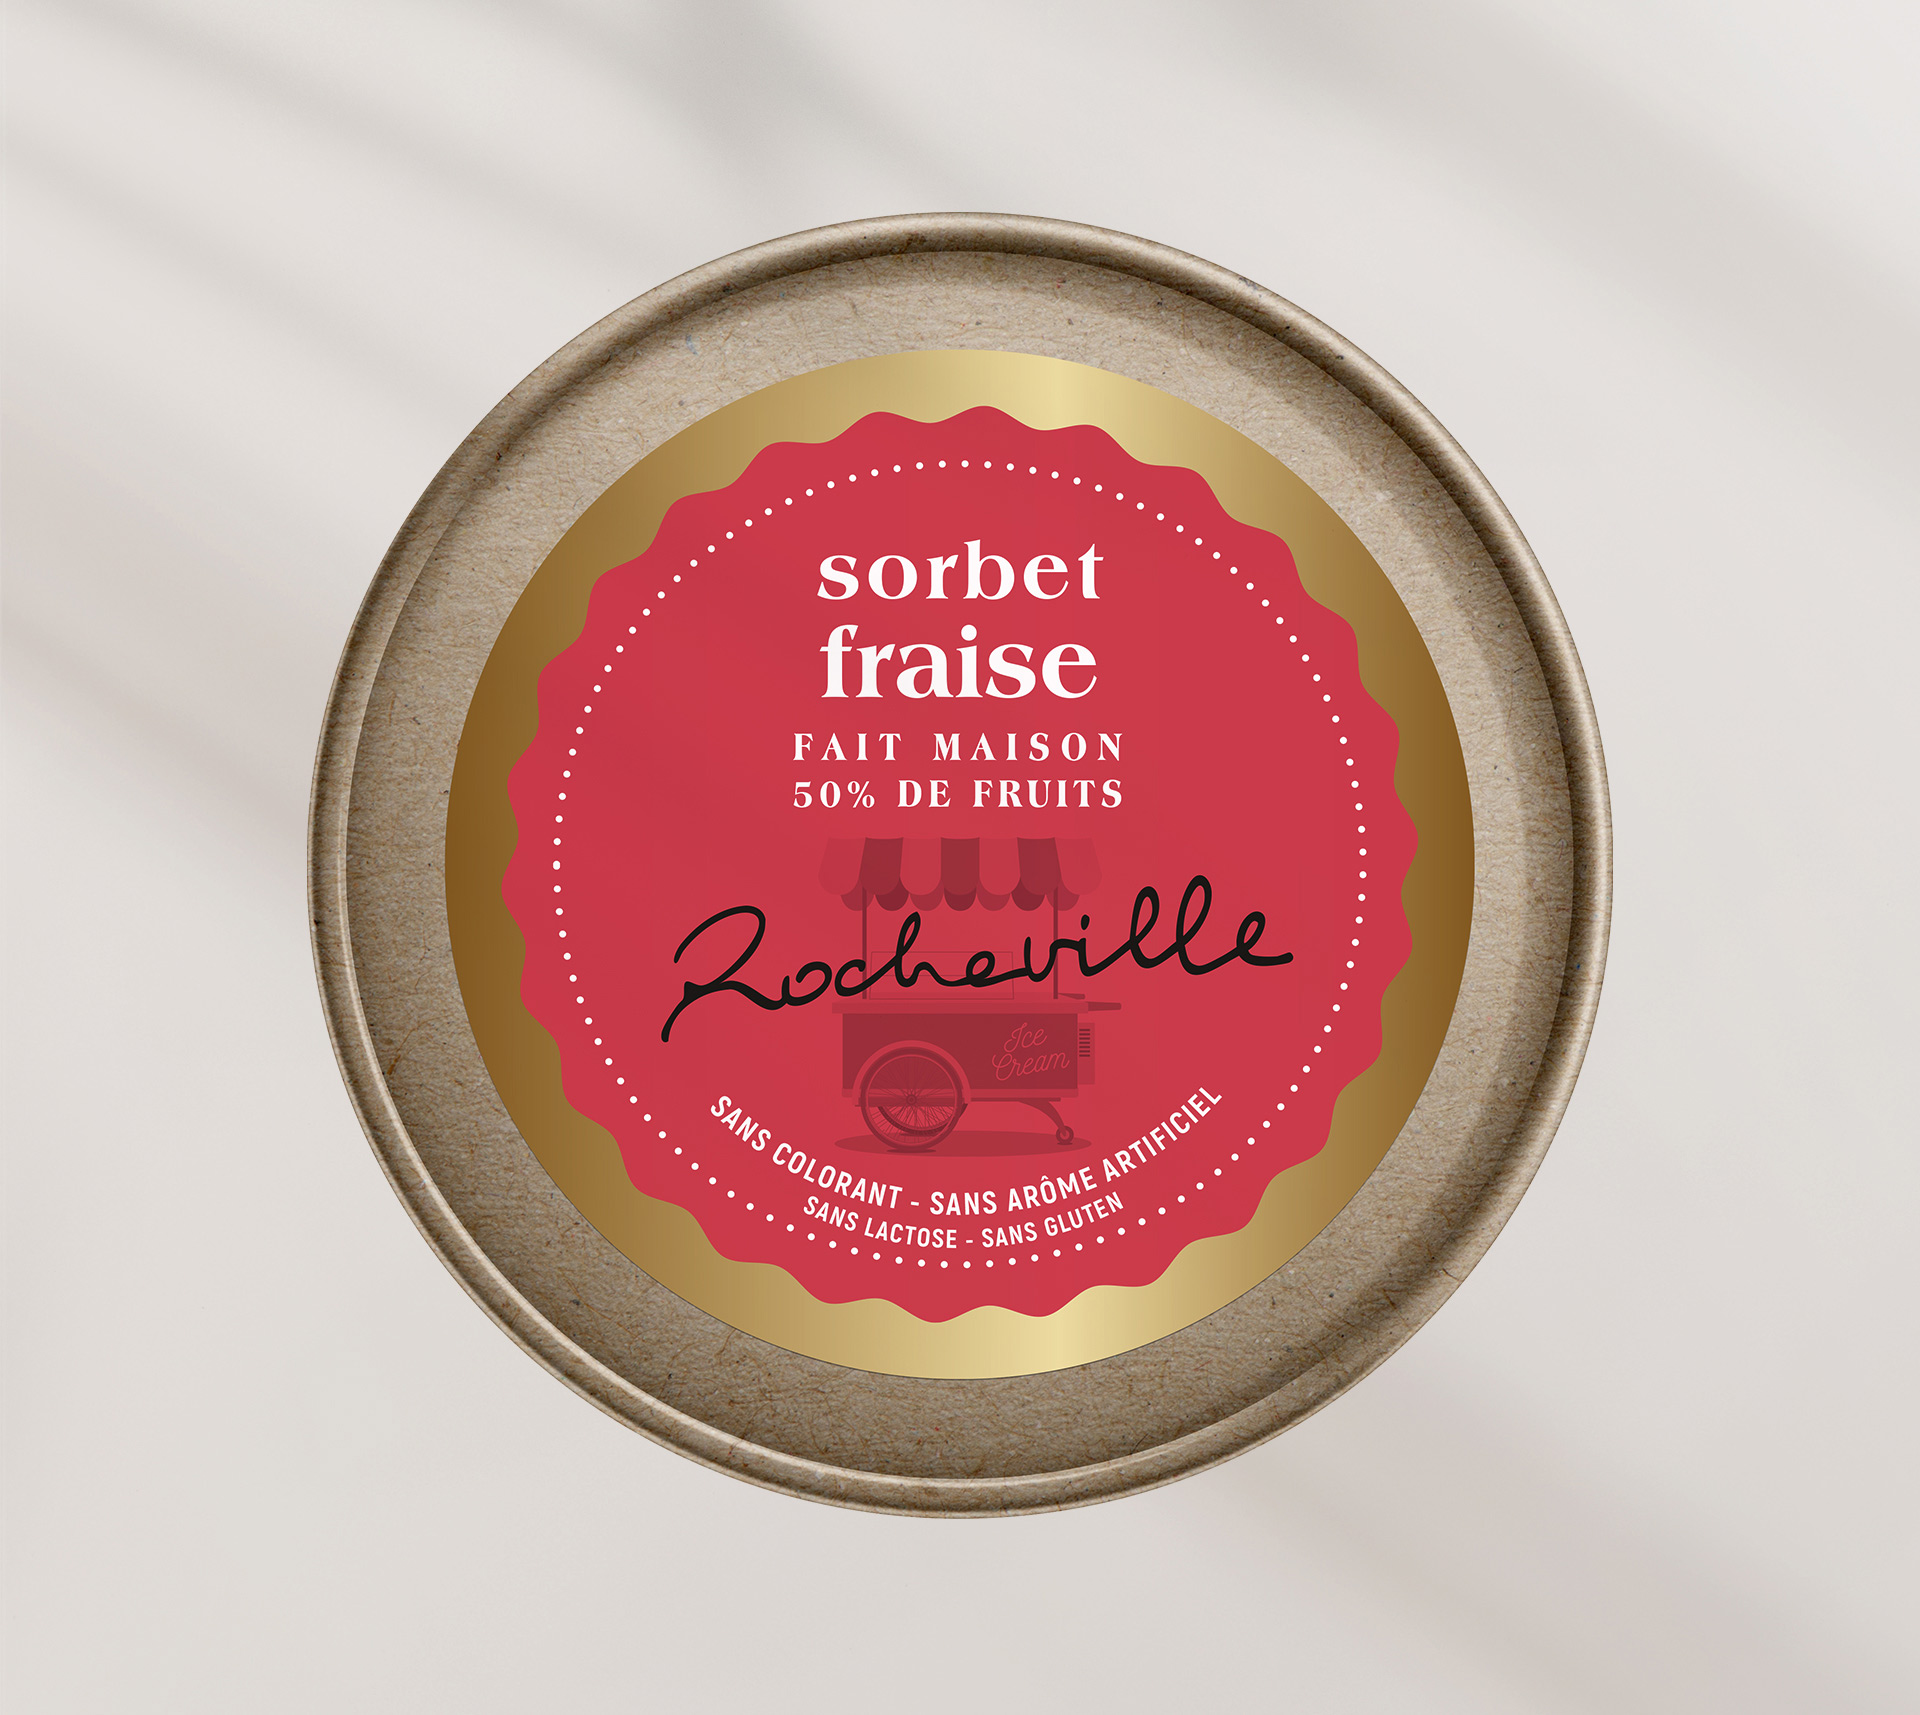 Rocheville - sorbet fraise